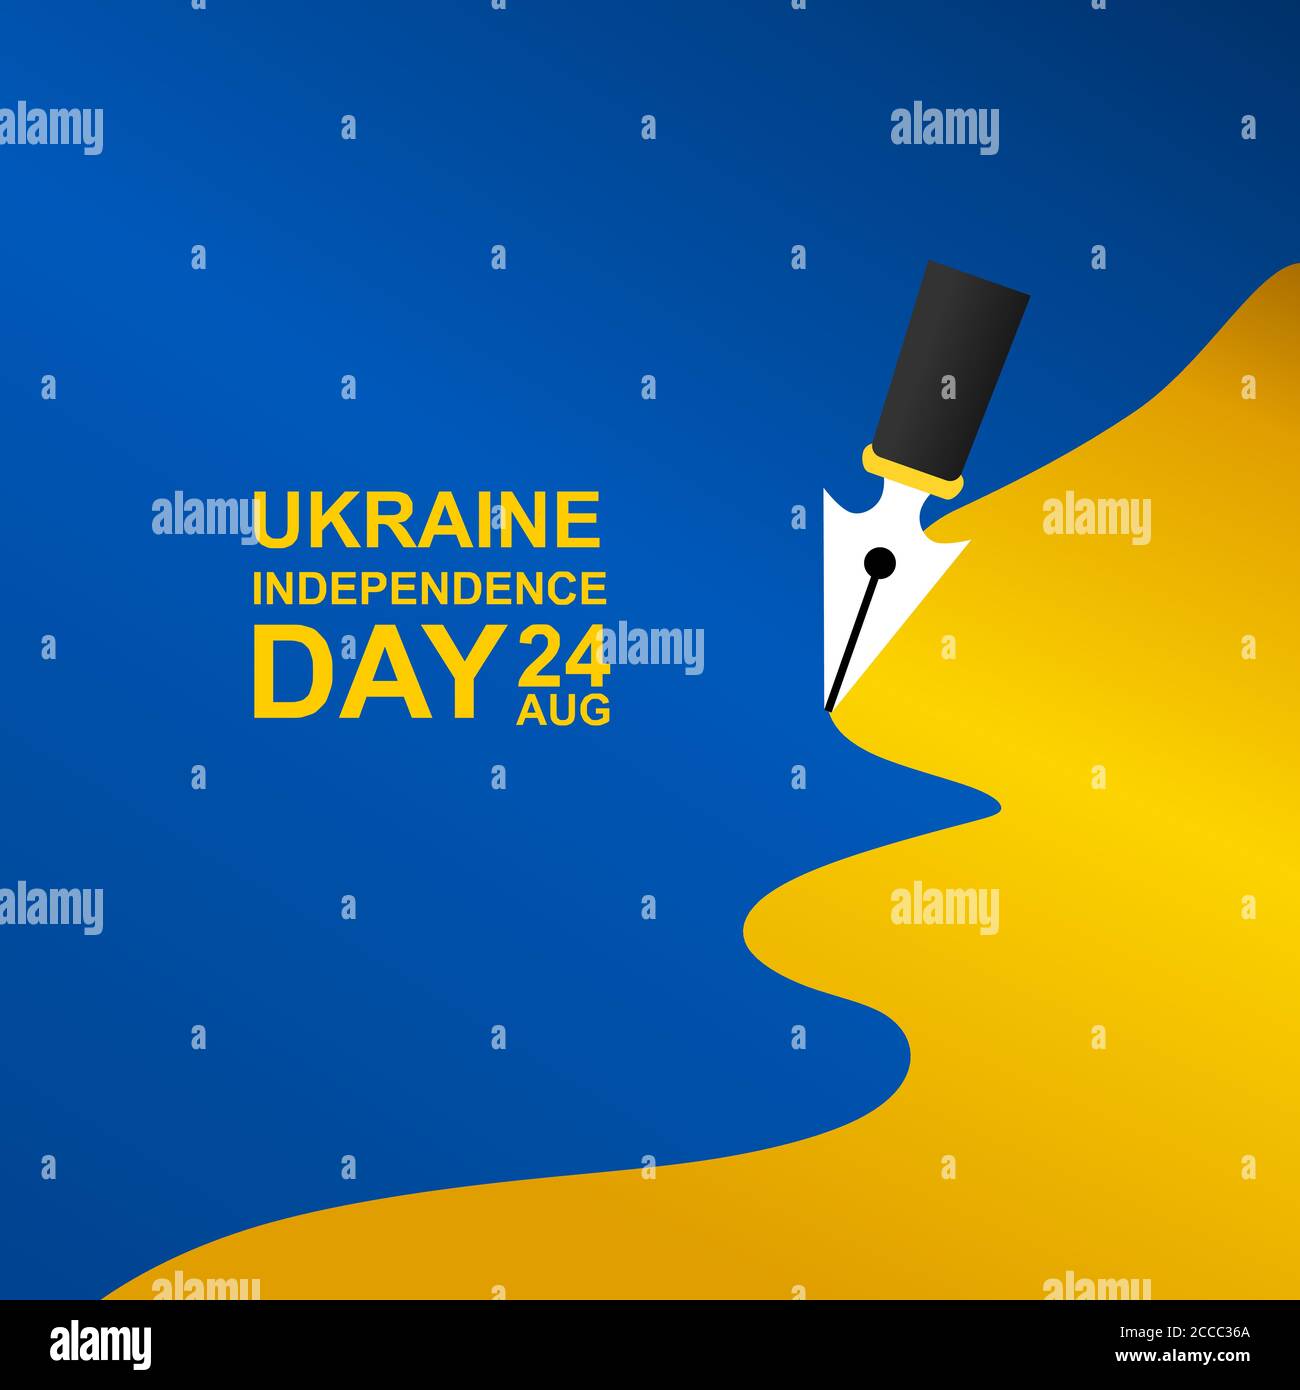 l'illustrazione vettoriale del giorno dell'indipendenza dell'ucraina, per accogliere l'importante giorno dell'Ucraina il 24 agosto, le dimensioni aggiuntive includono strato per strato Illustrazione Vettoriale